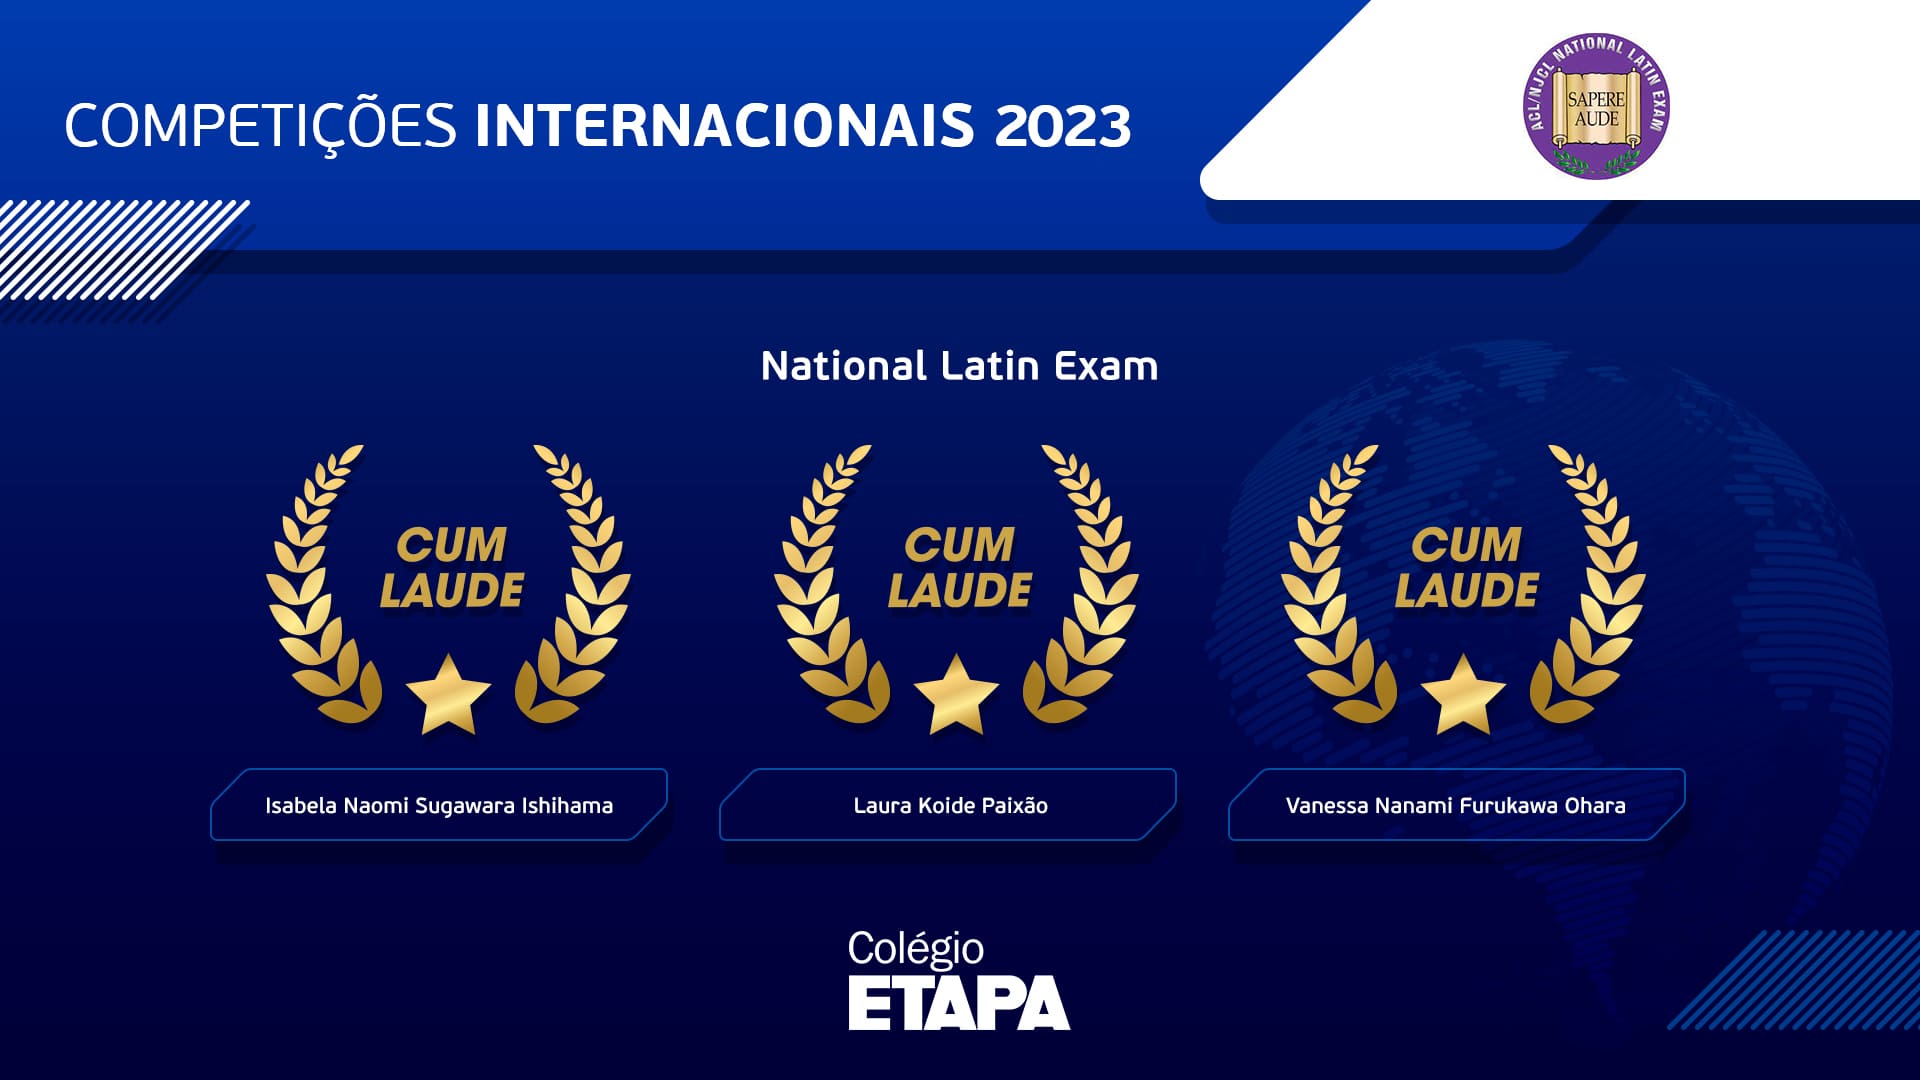 Três de nossas alunas conquistaram premiações no National Latin Exam, após a primeira participação do Colégio Etapa no exame.